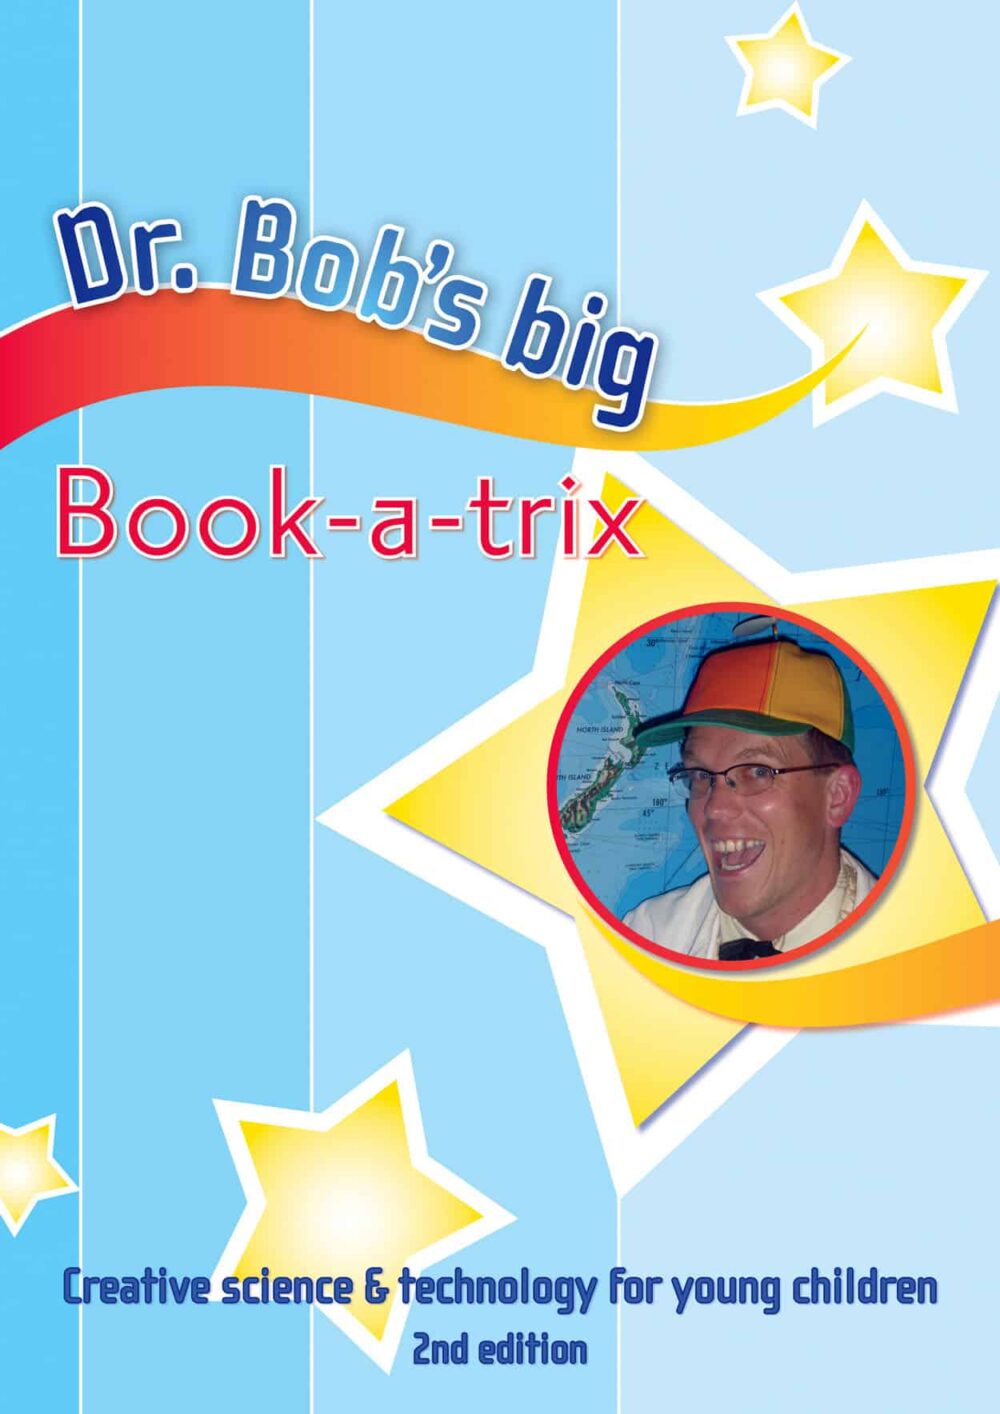 Dr. Bob's Big Book a Trix